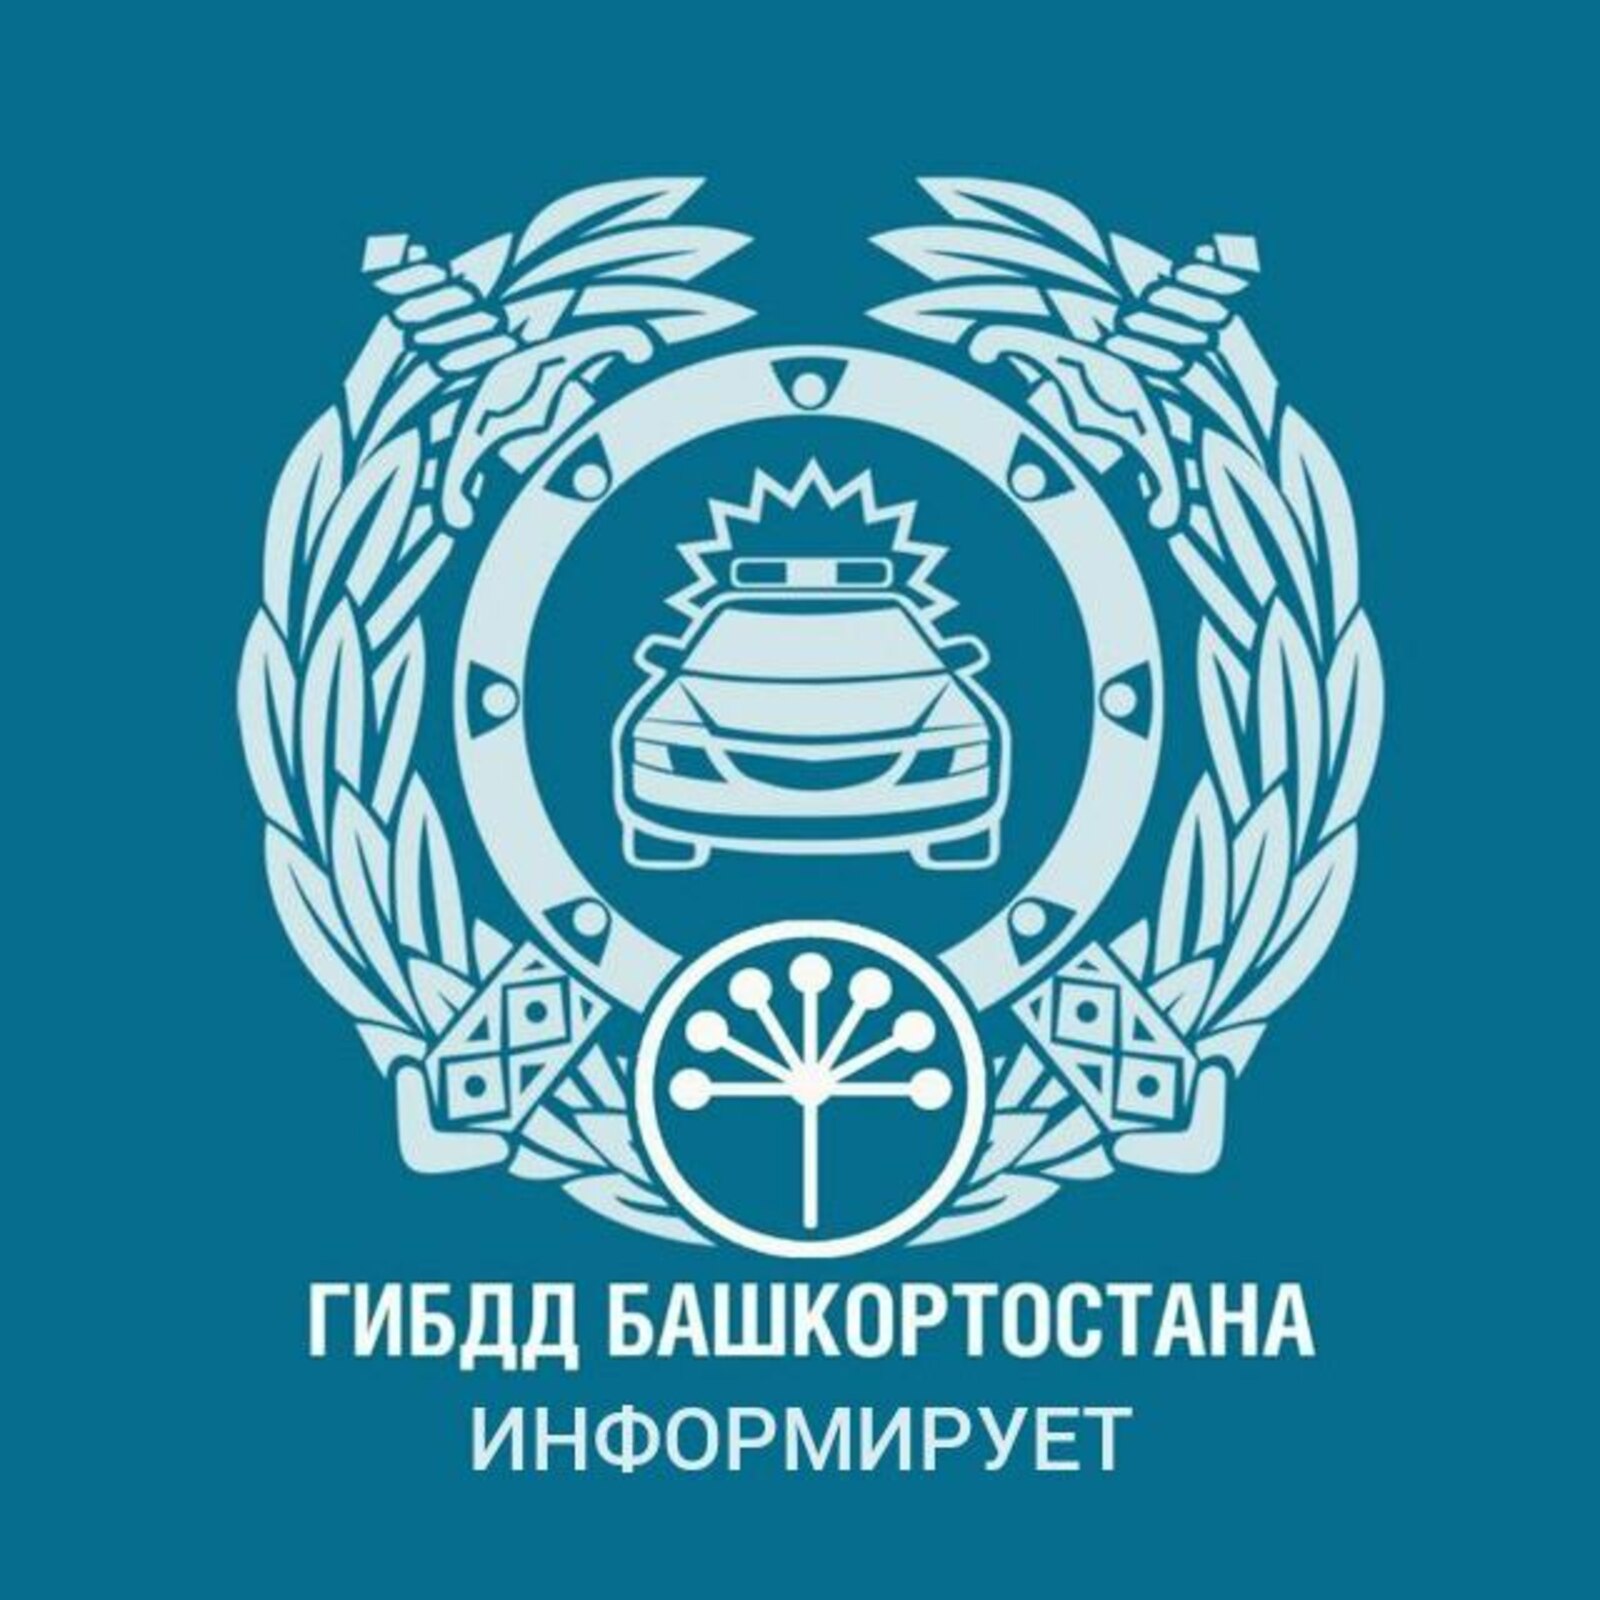 Госавтоинспекция Краснокамского района информирует об изменении требований к регистрации транспортных средств и прохождению технического осмотра